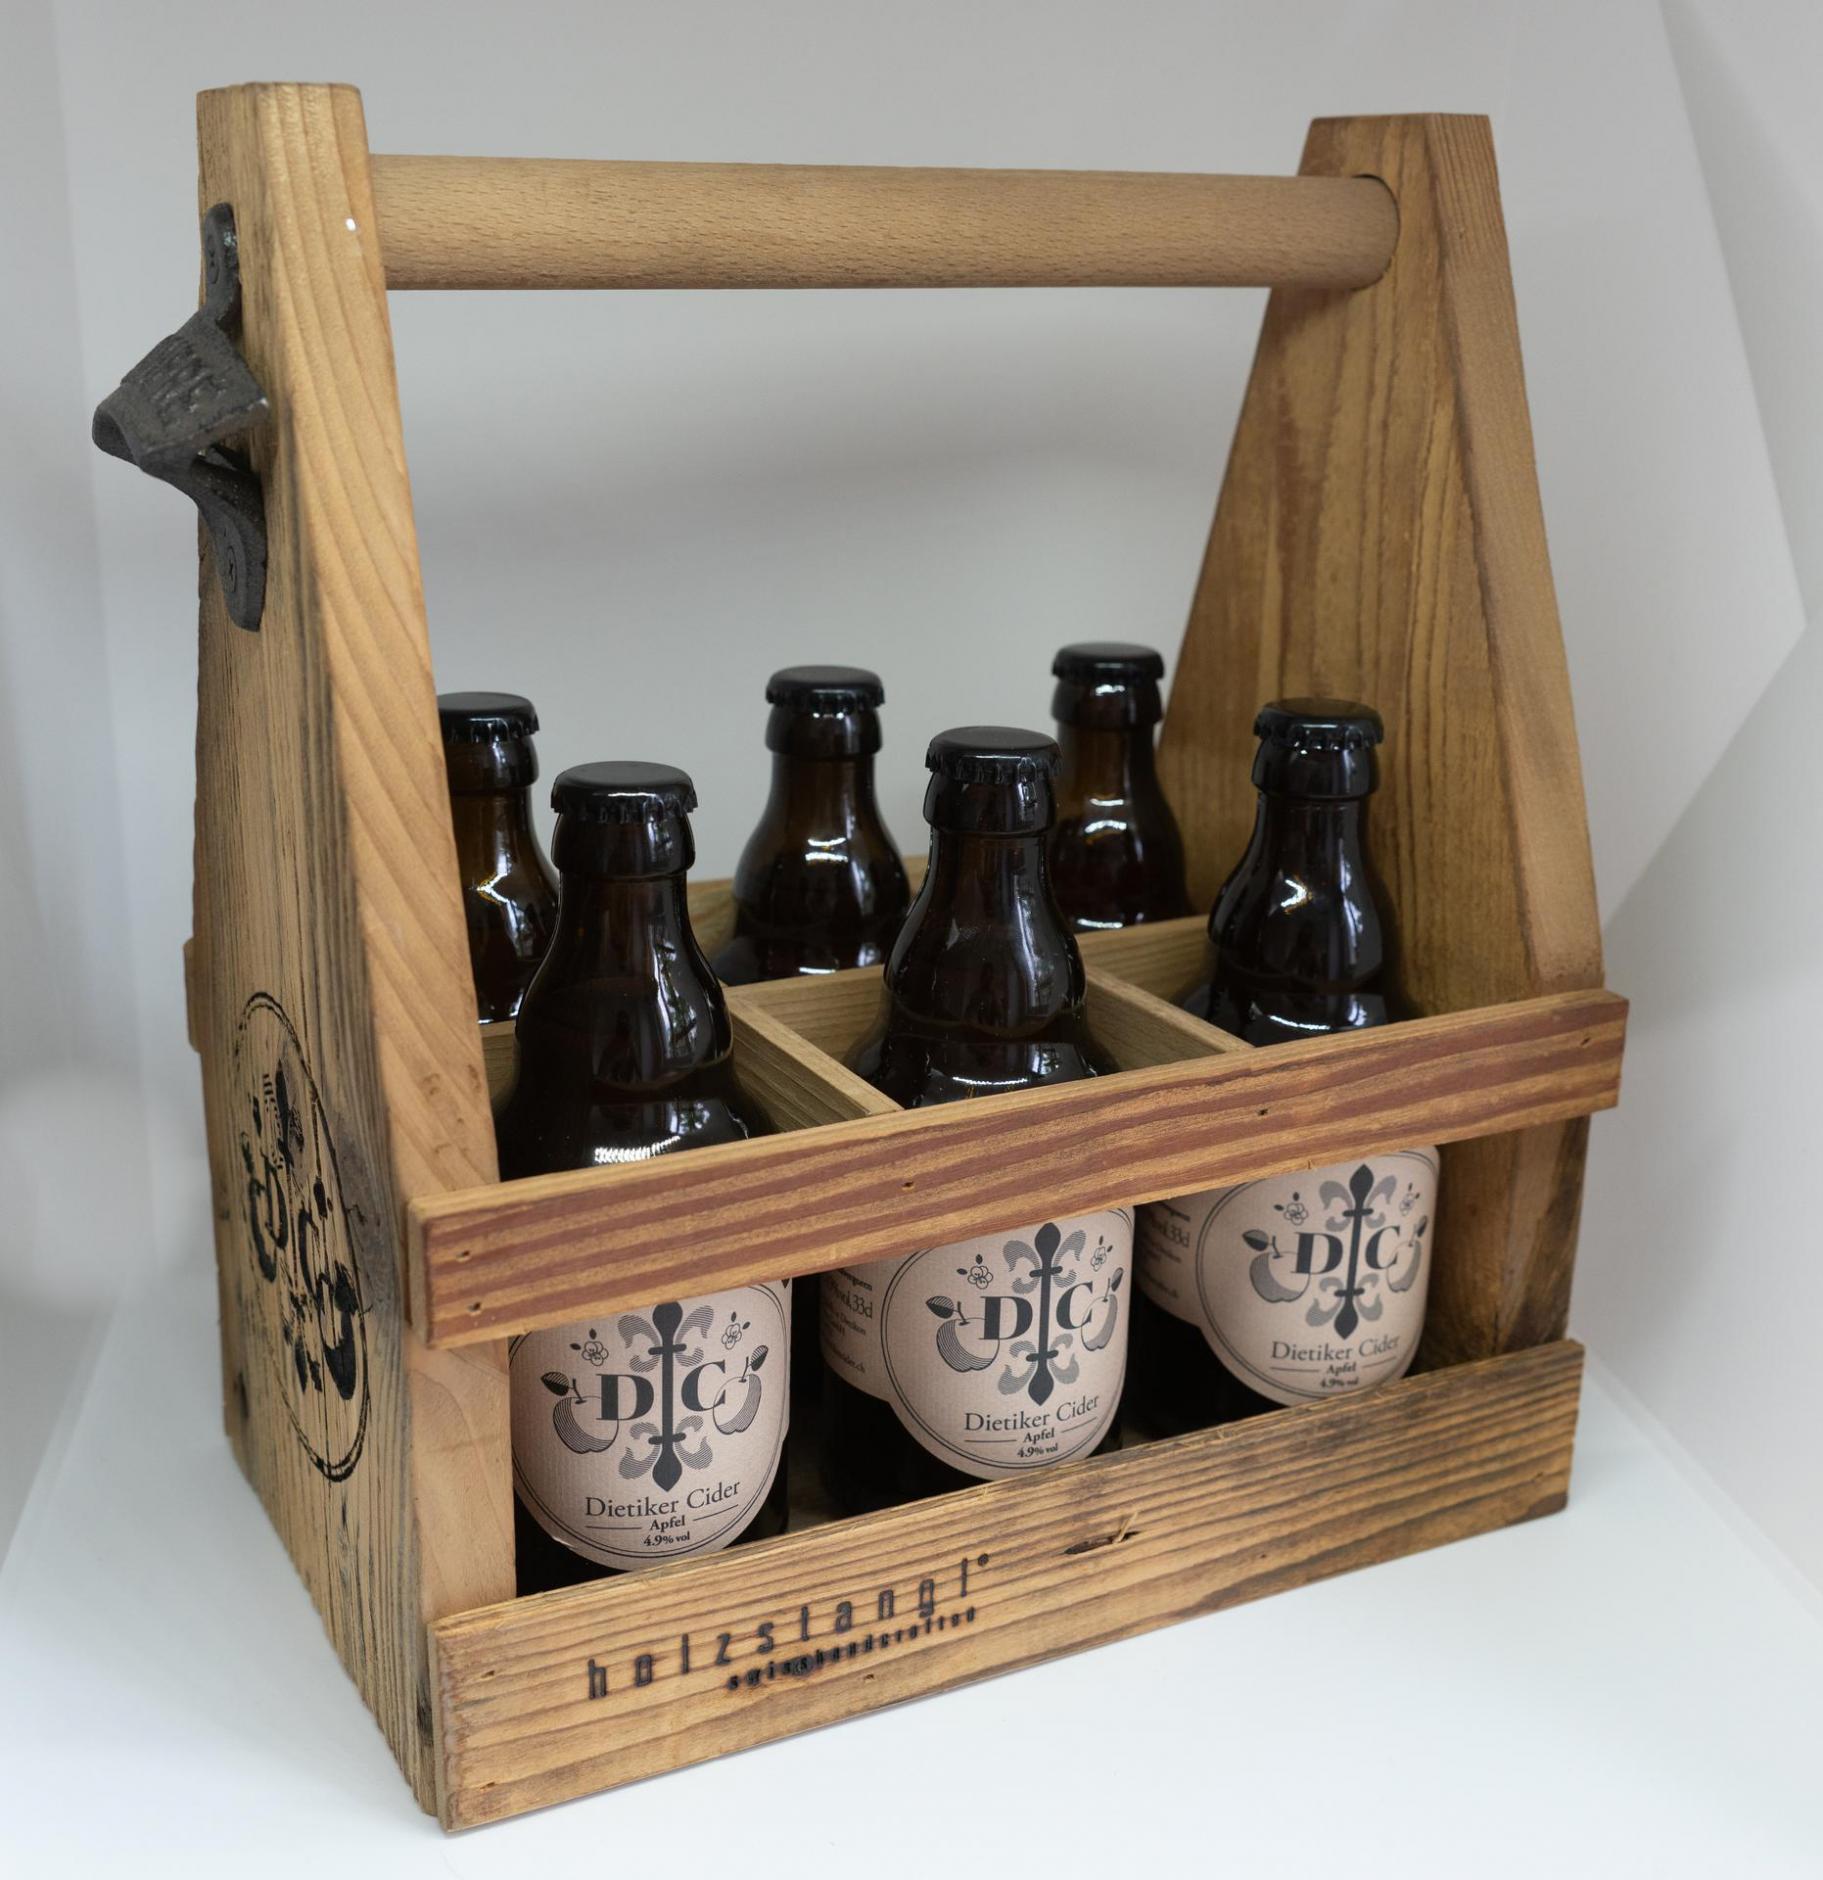 Holztray für 6 Flaschen mit Logo Dietiker Cider